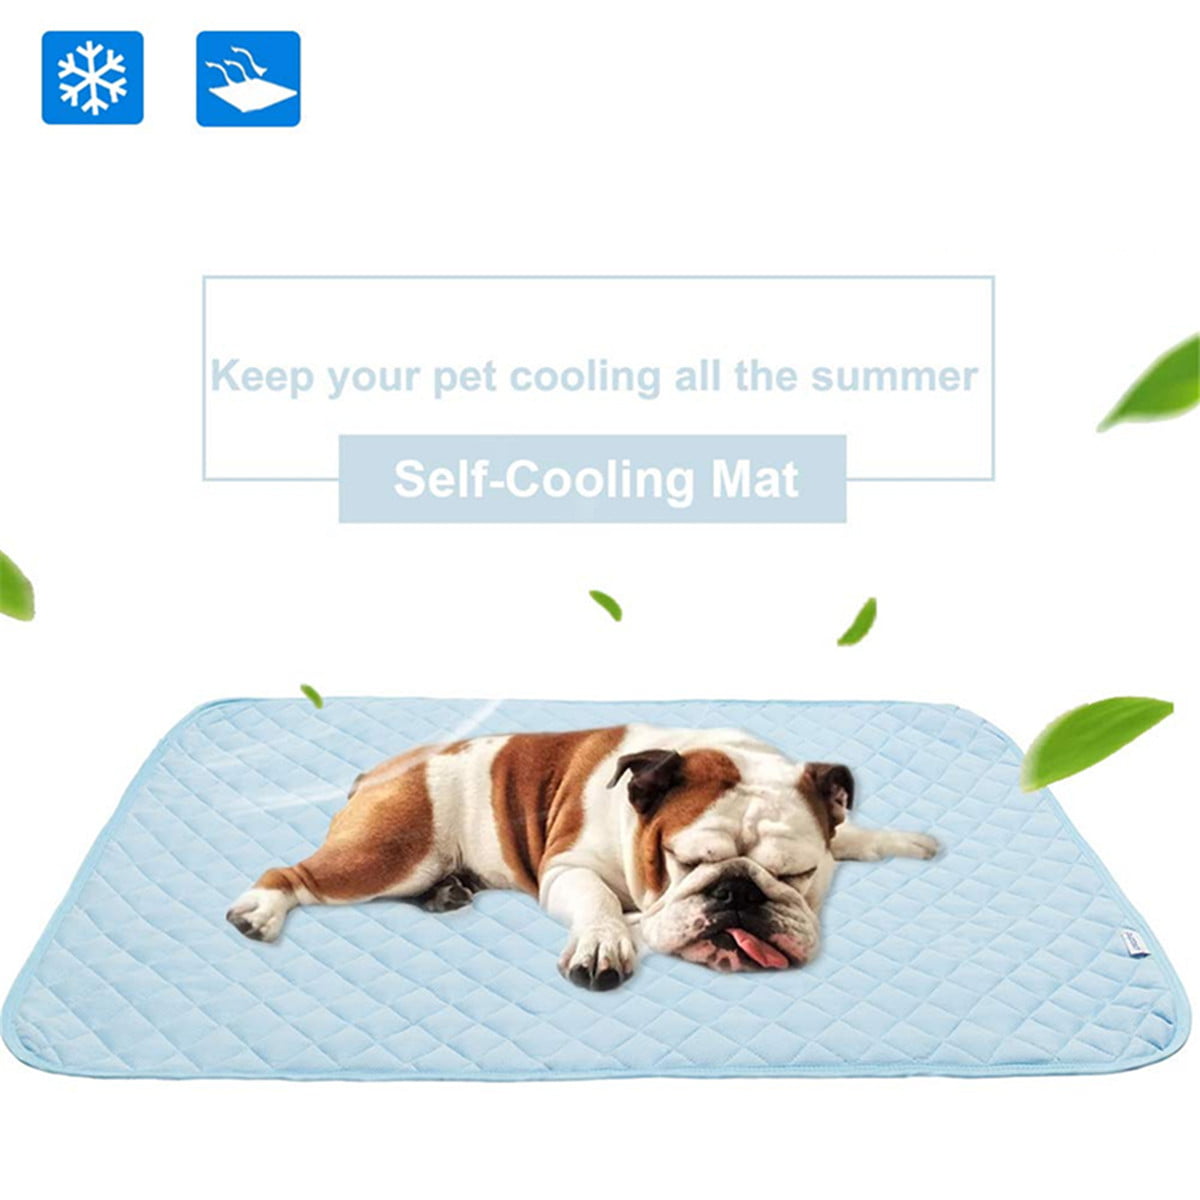 Cooling Gel Pillow Comfort Sleep Cool Pad Laptop Yoga Car Seat Pet Mat 30 x 70cm